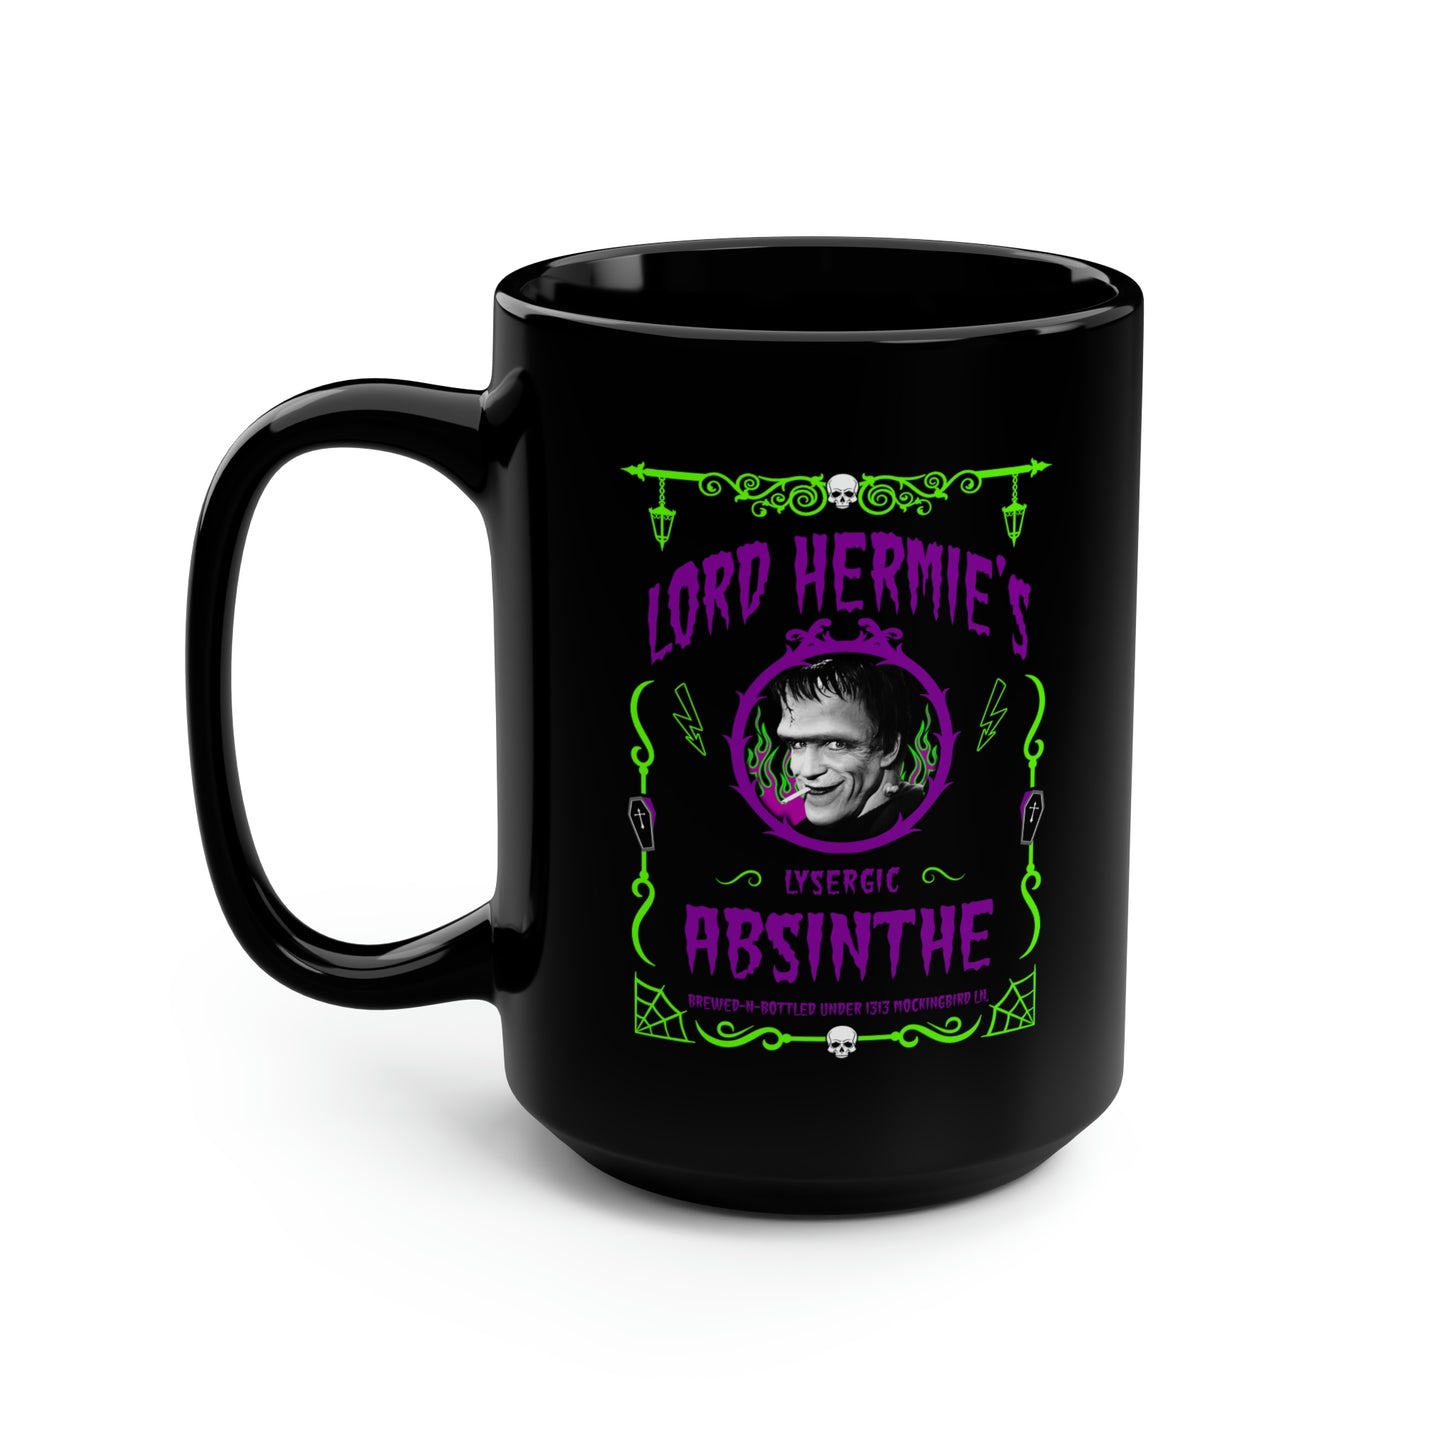 ABSINTHE MONSTERS 18 (LORD HERMIE) Black Mug, 15oz